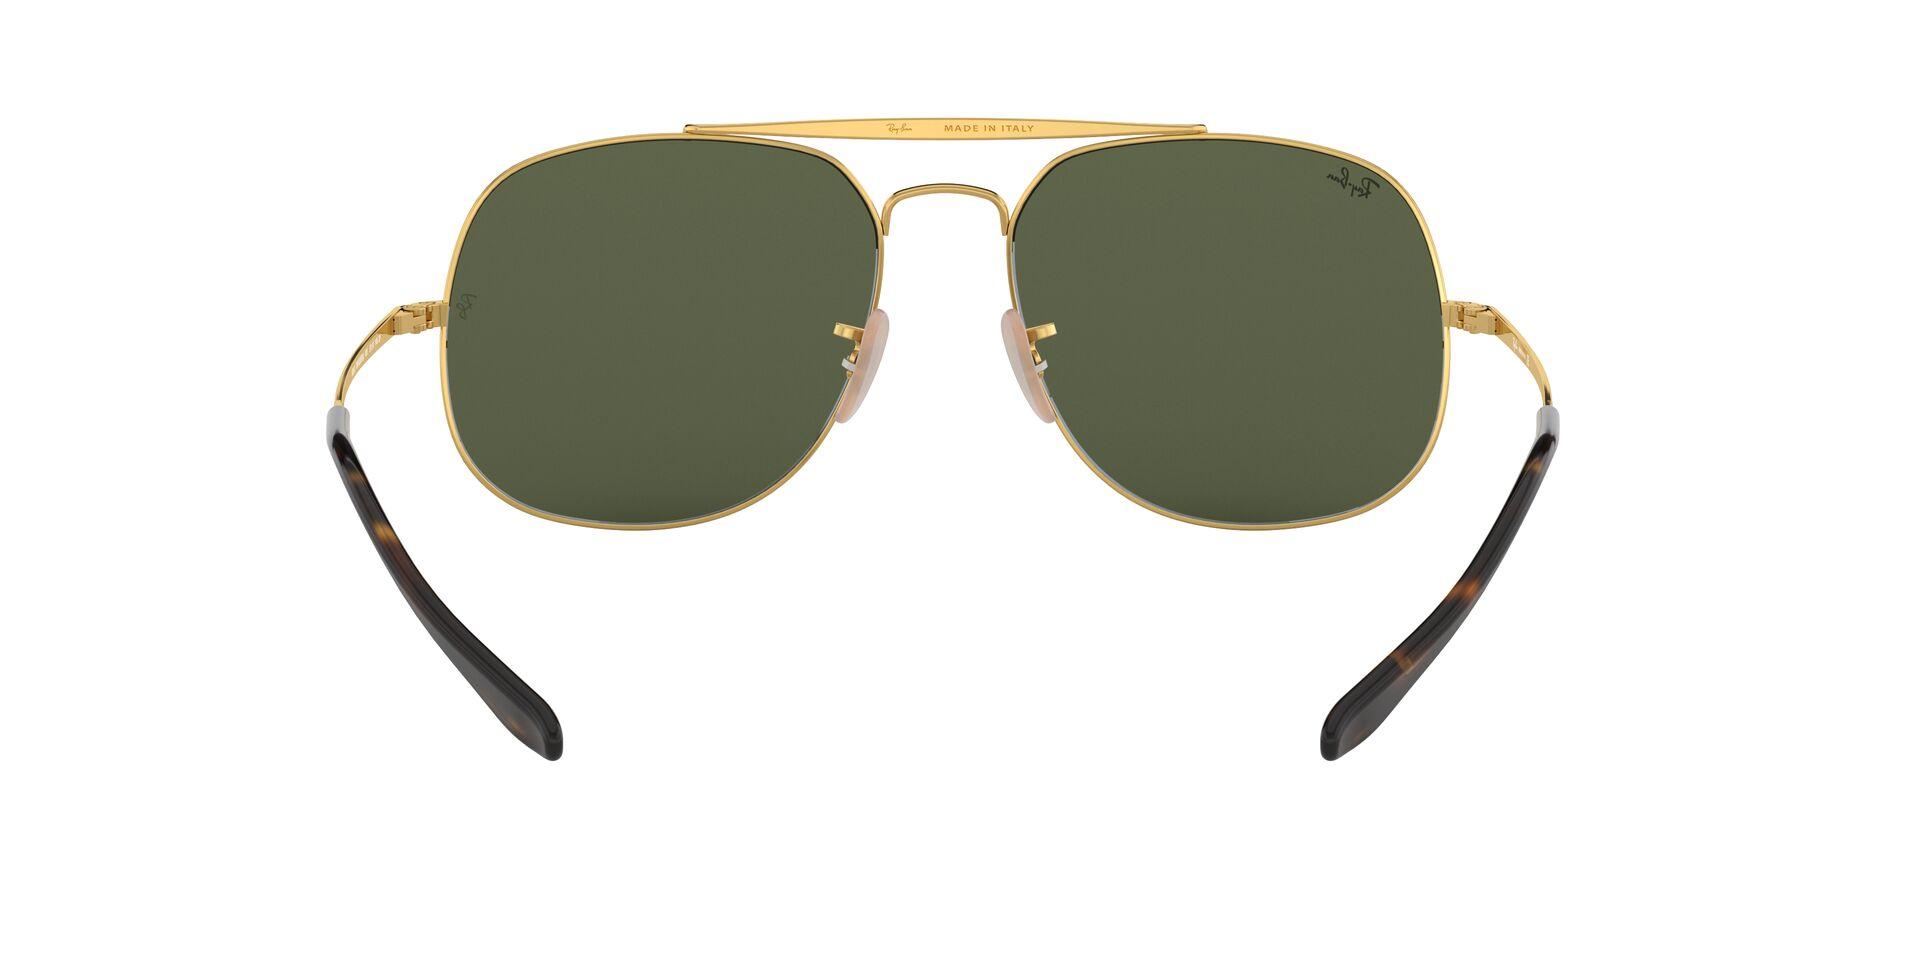 Mắt Kính Ray-Ban General  - RB3561 001 -Sunglasses